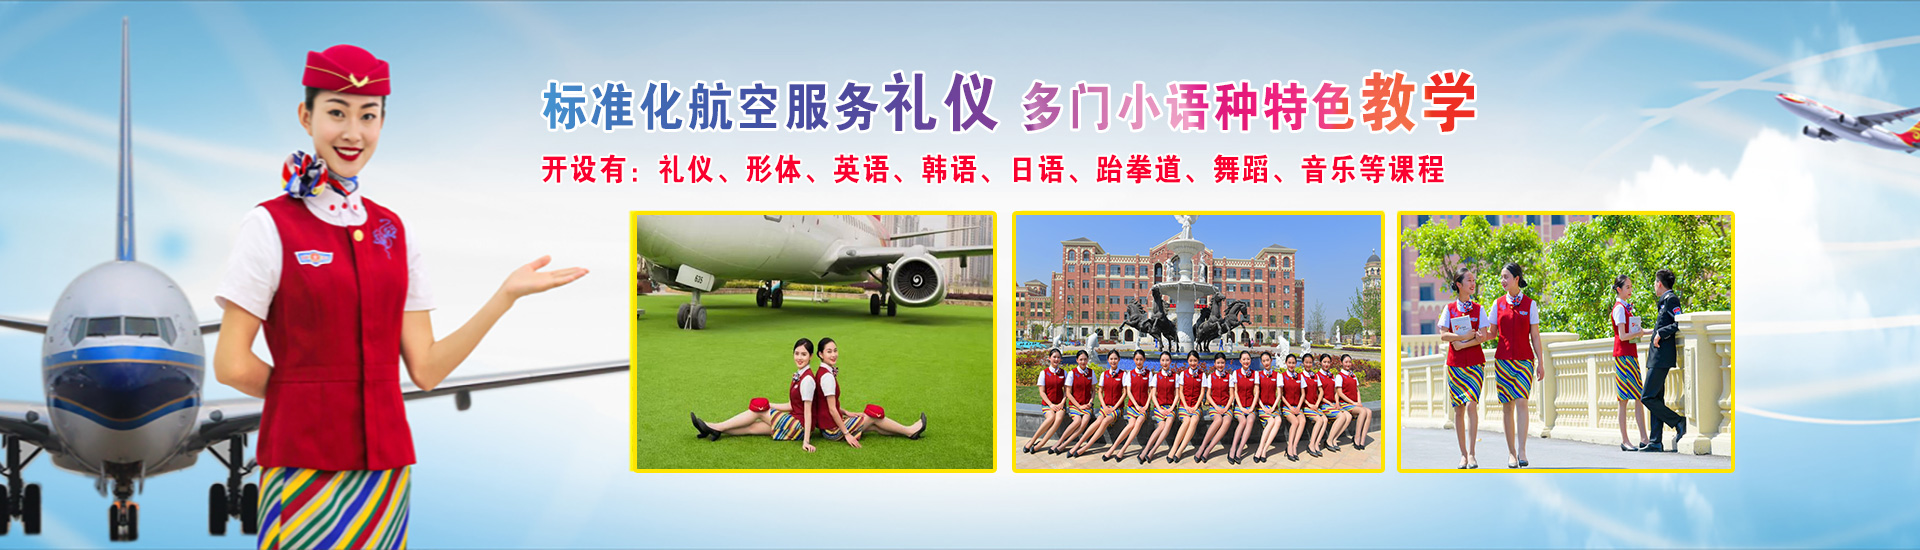 重庆航空学校地址